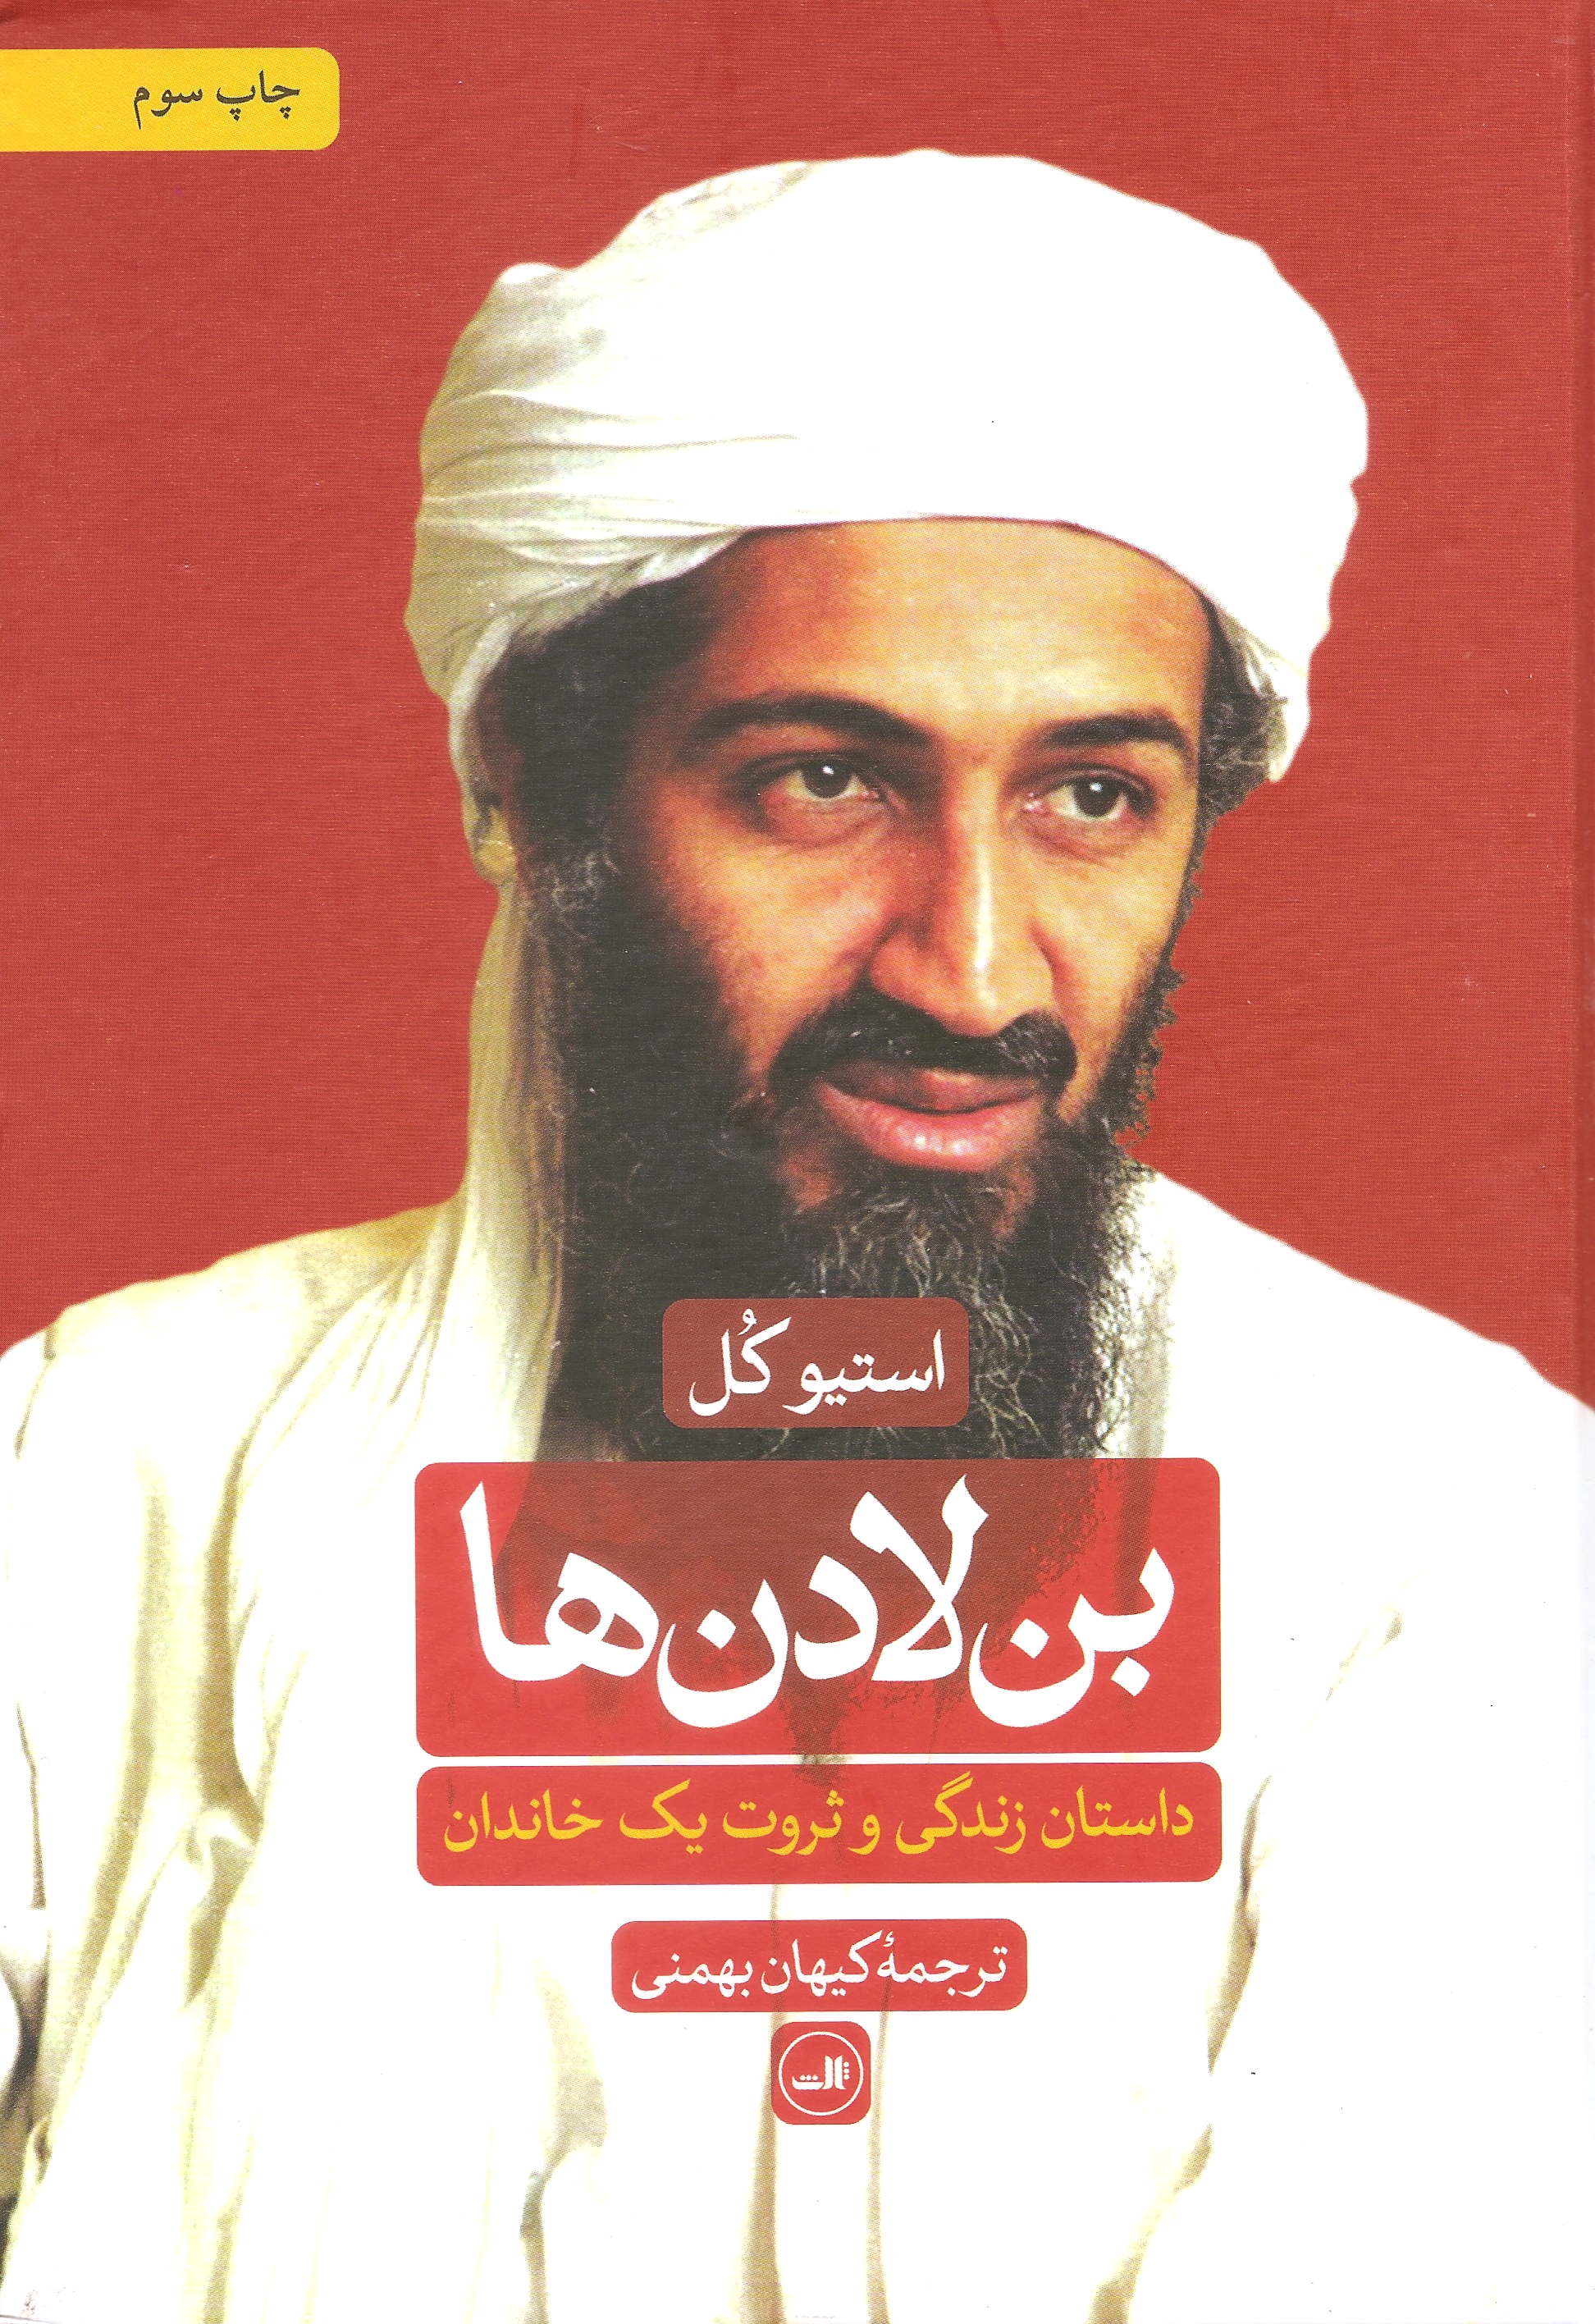 بن لادن ها داستان زندگی و ثروت یک خاندان استیو کل(ثالث)